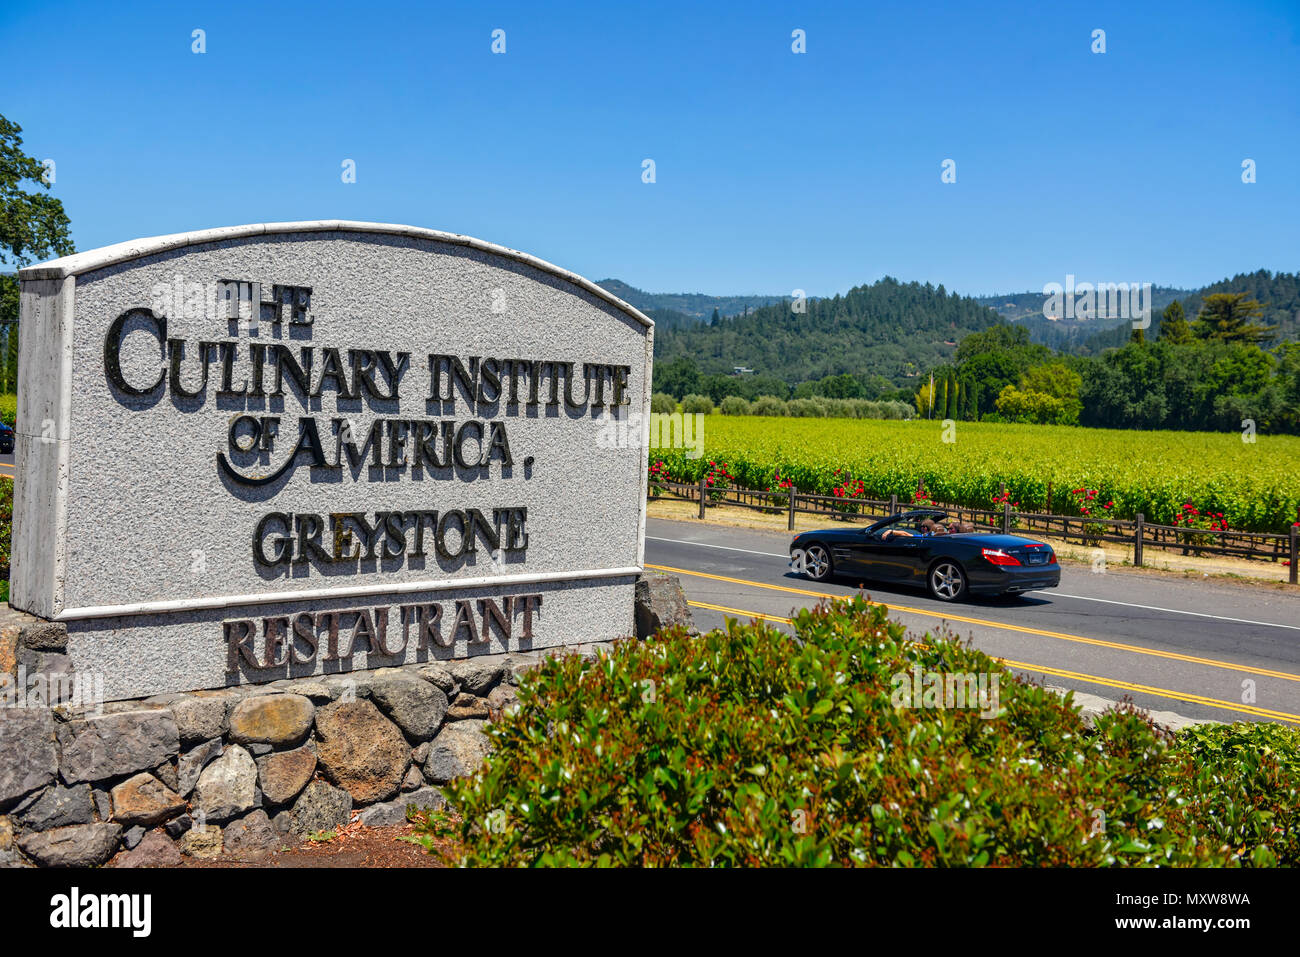 Napa, California - El signo para el Culinary Institute of America con converible automóvil por viñedos y paisaje. Foto de stock